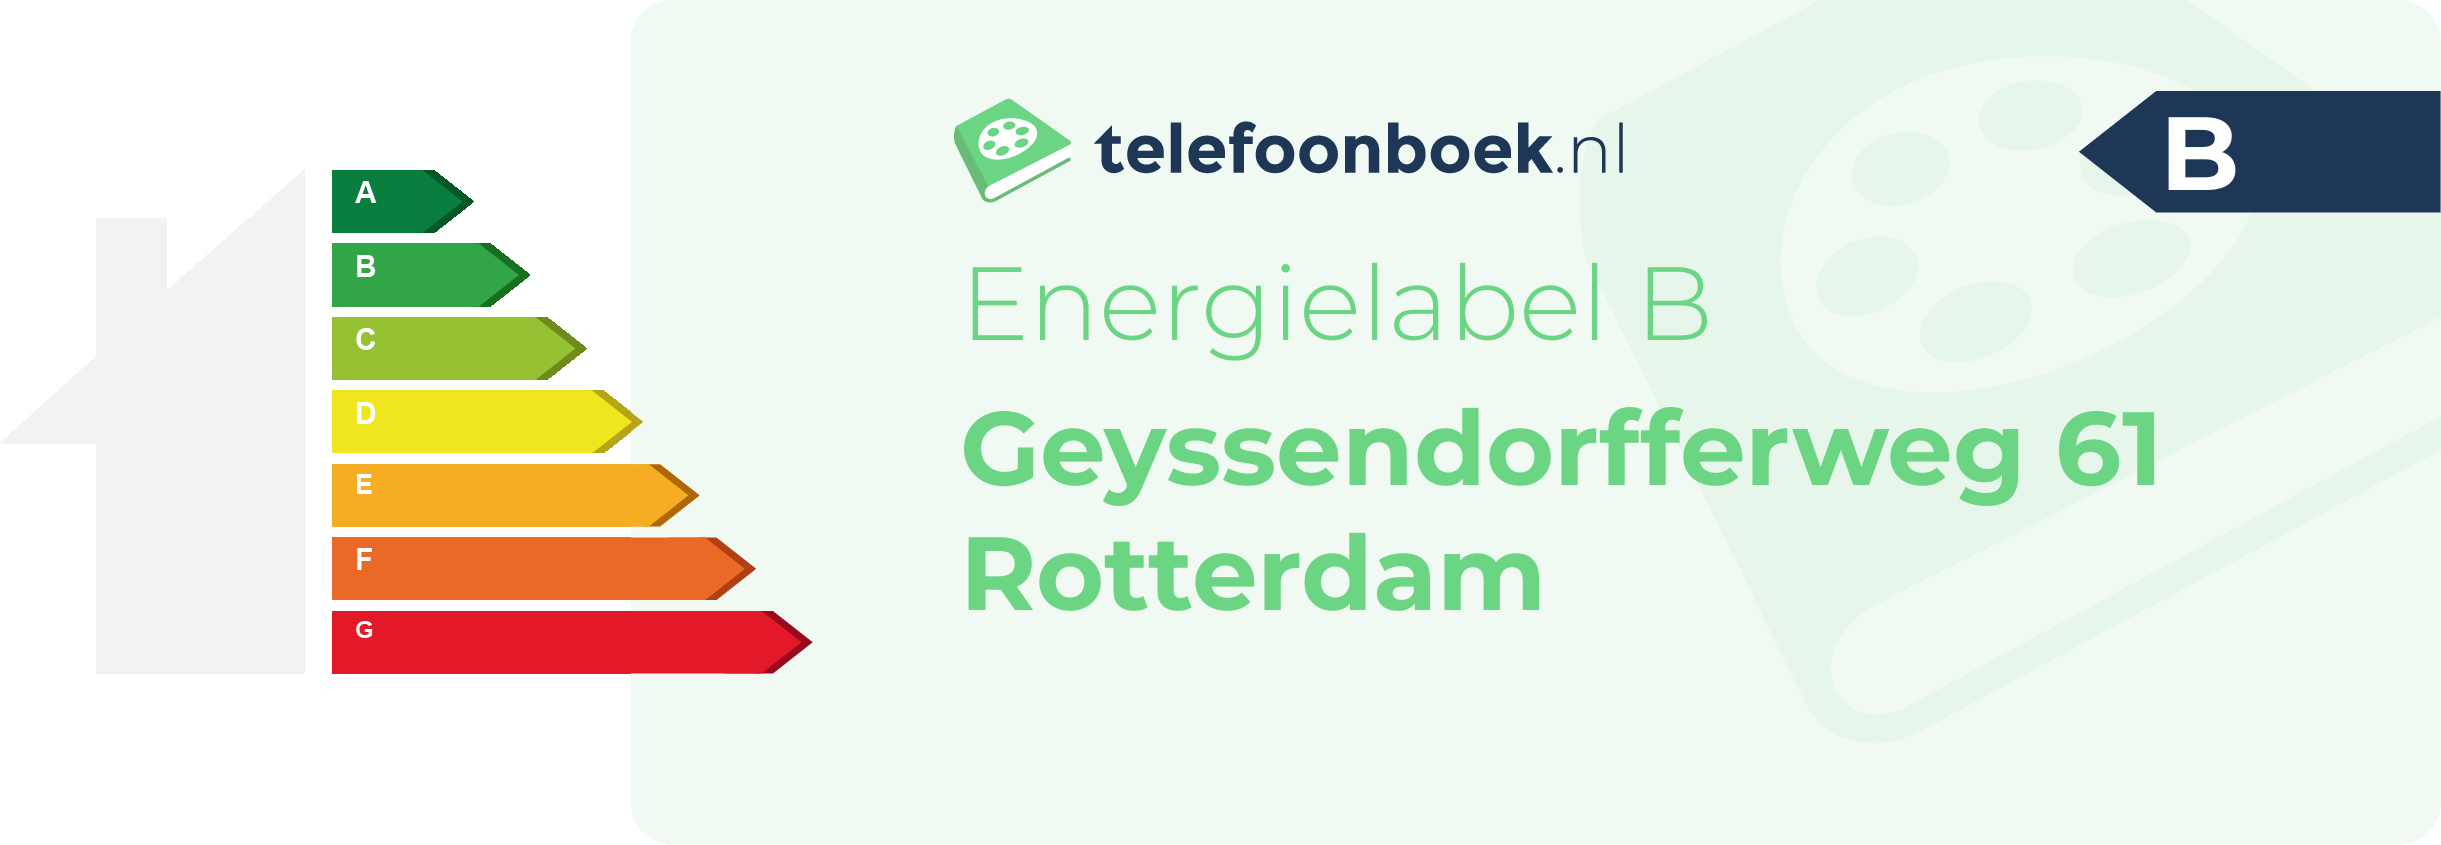 Energielabel Geyssendorfferweg 61 Rotterdam